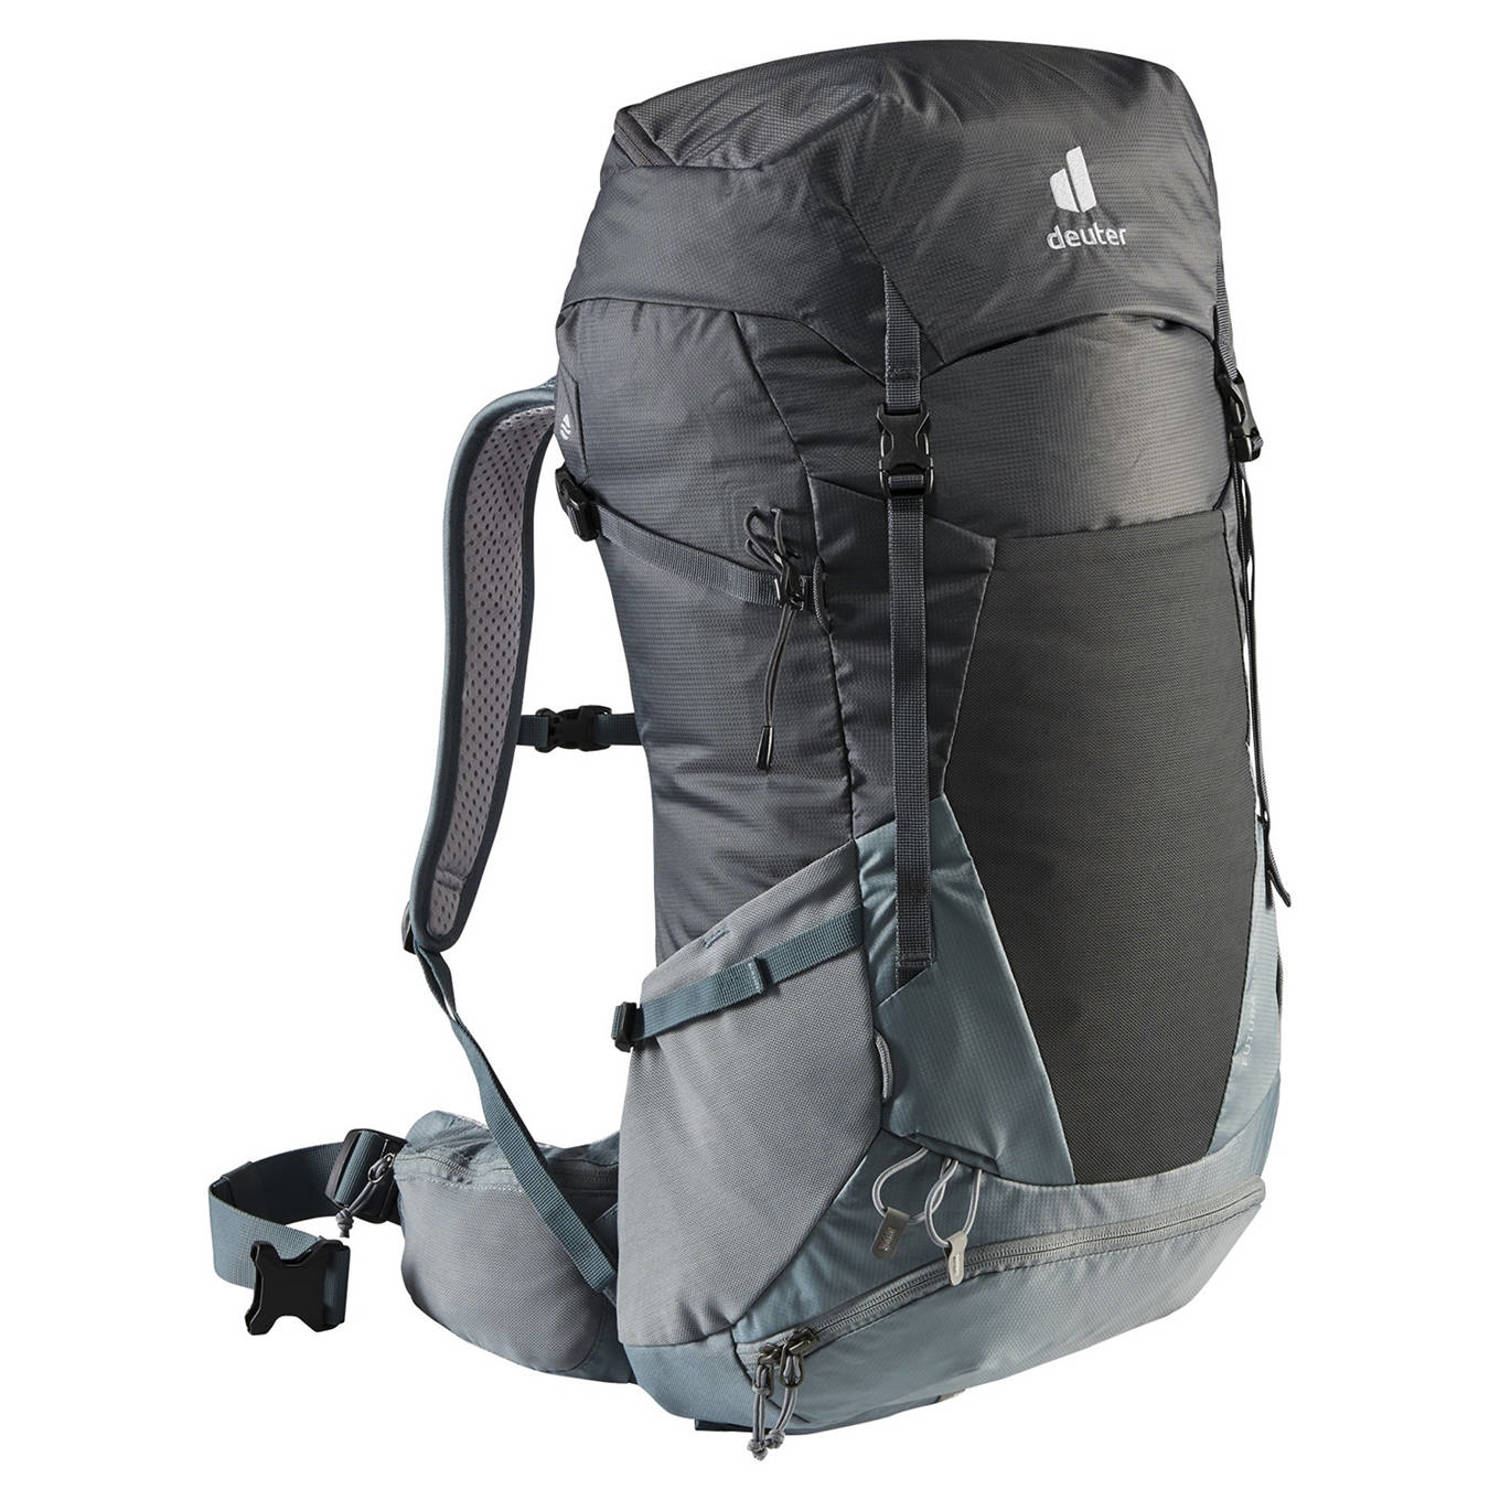 Deuter backpack Futura 30 SL grijs